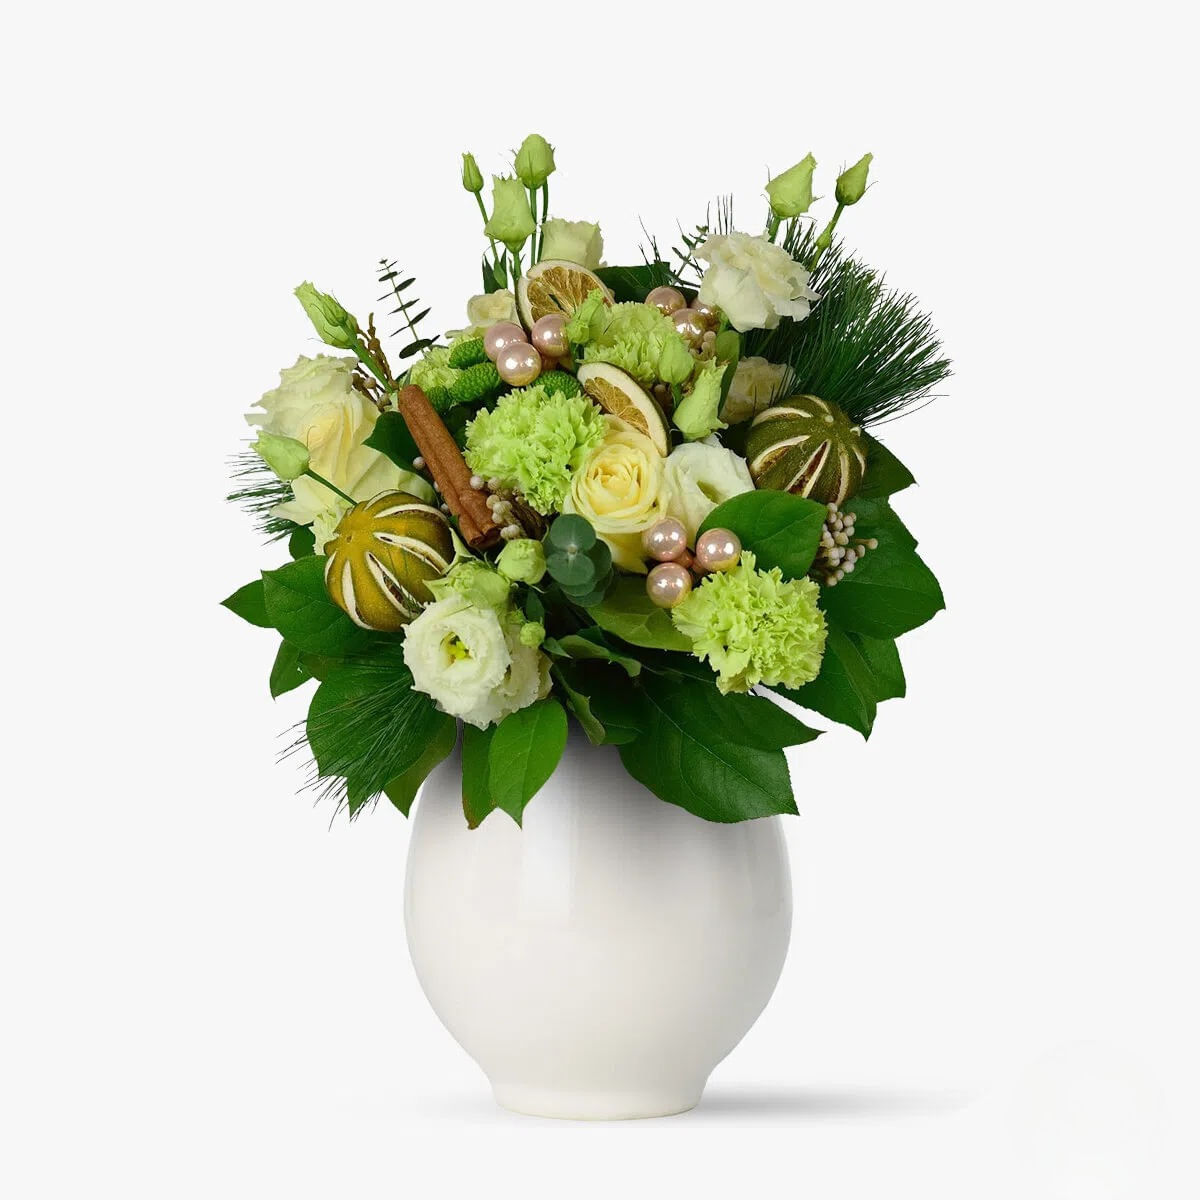 Buchet de flori cu 3 garoafe verzi, 3 trandafiri albi, 4 brunia Dar cu scortisoara